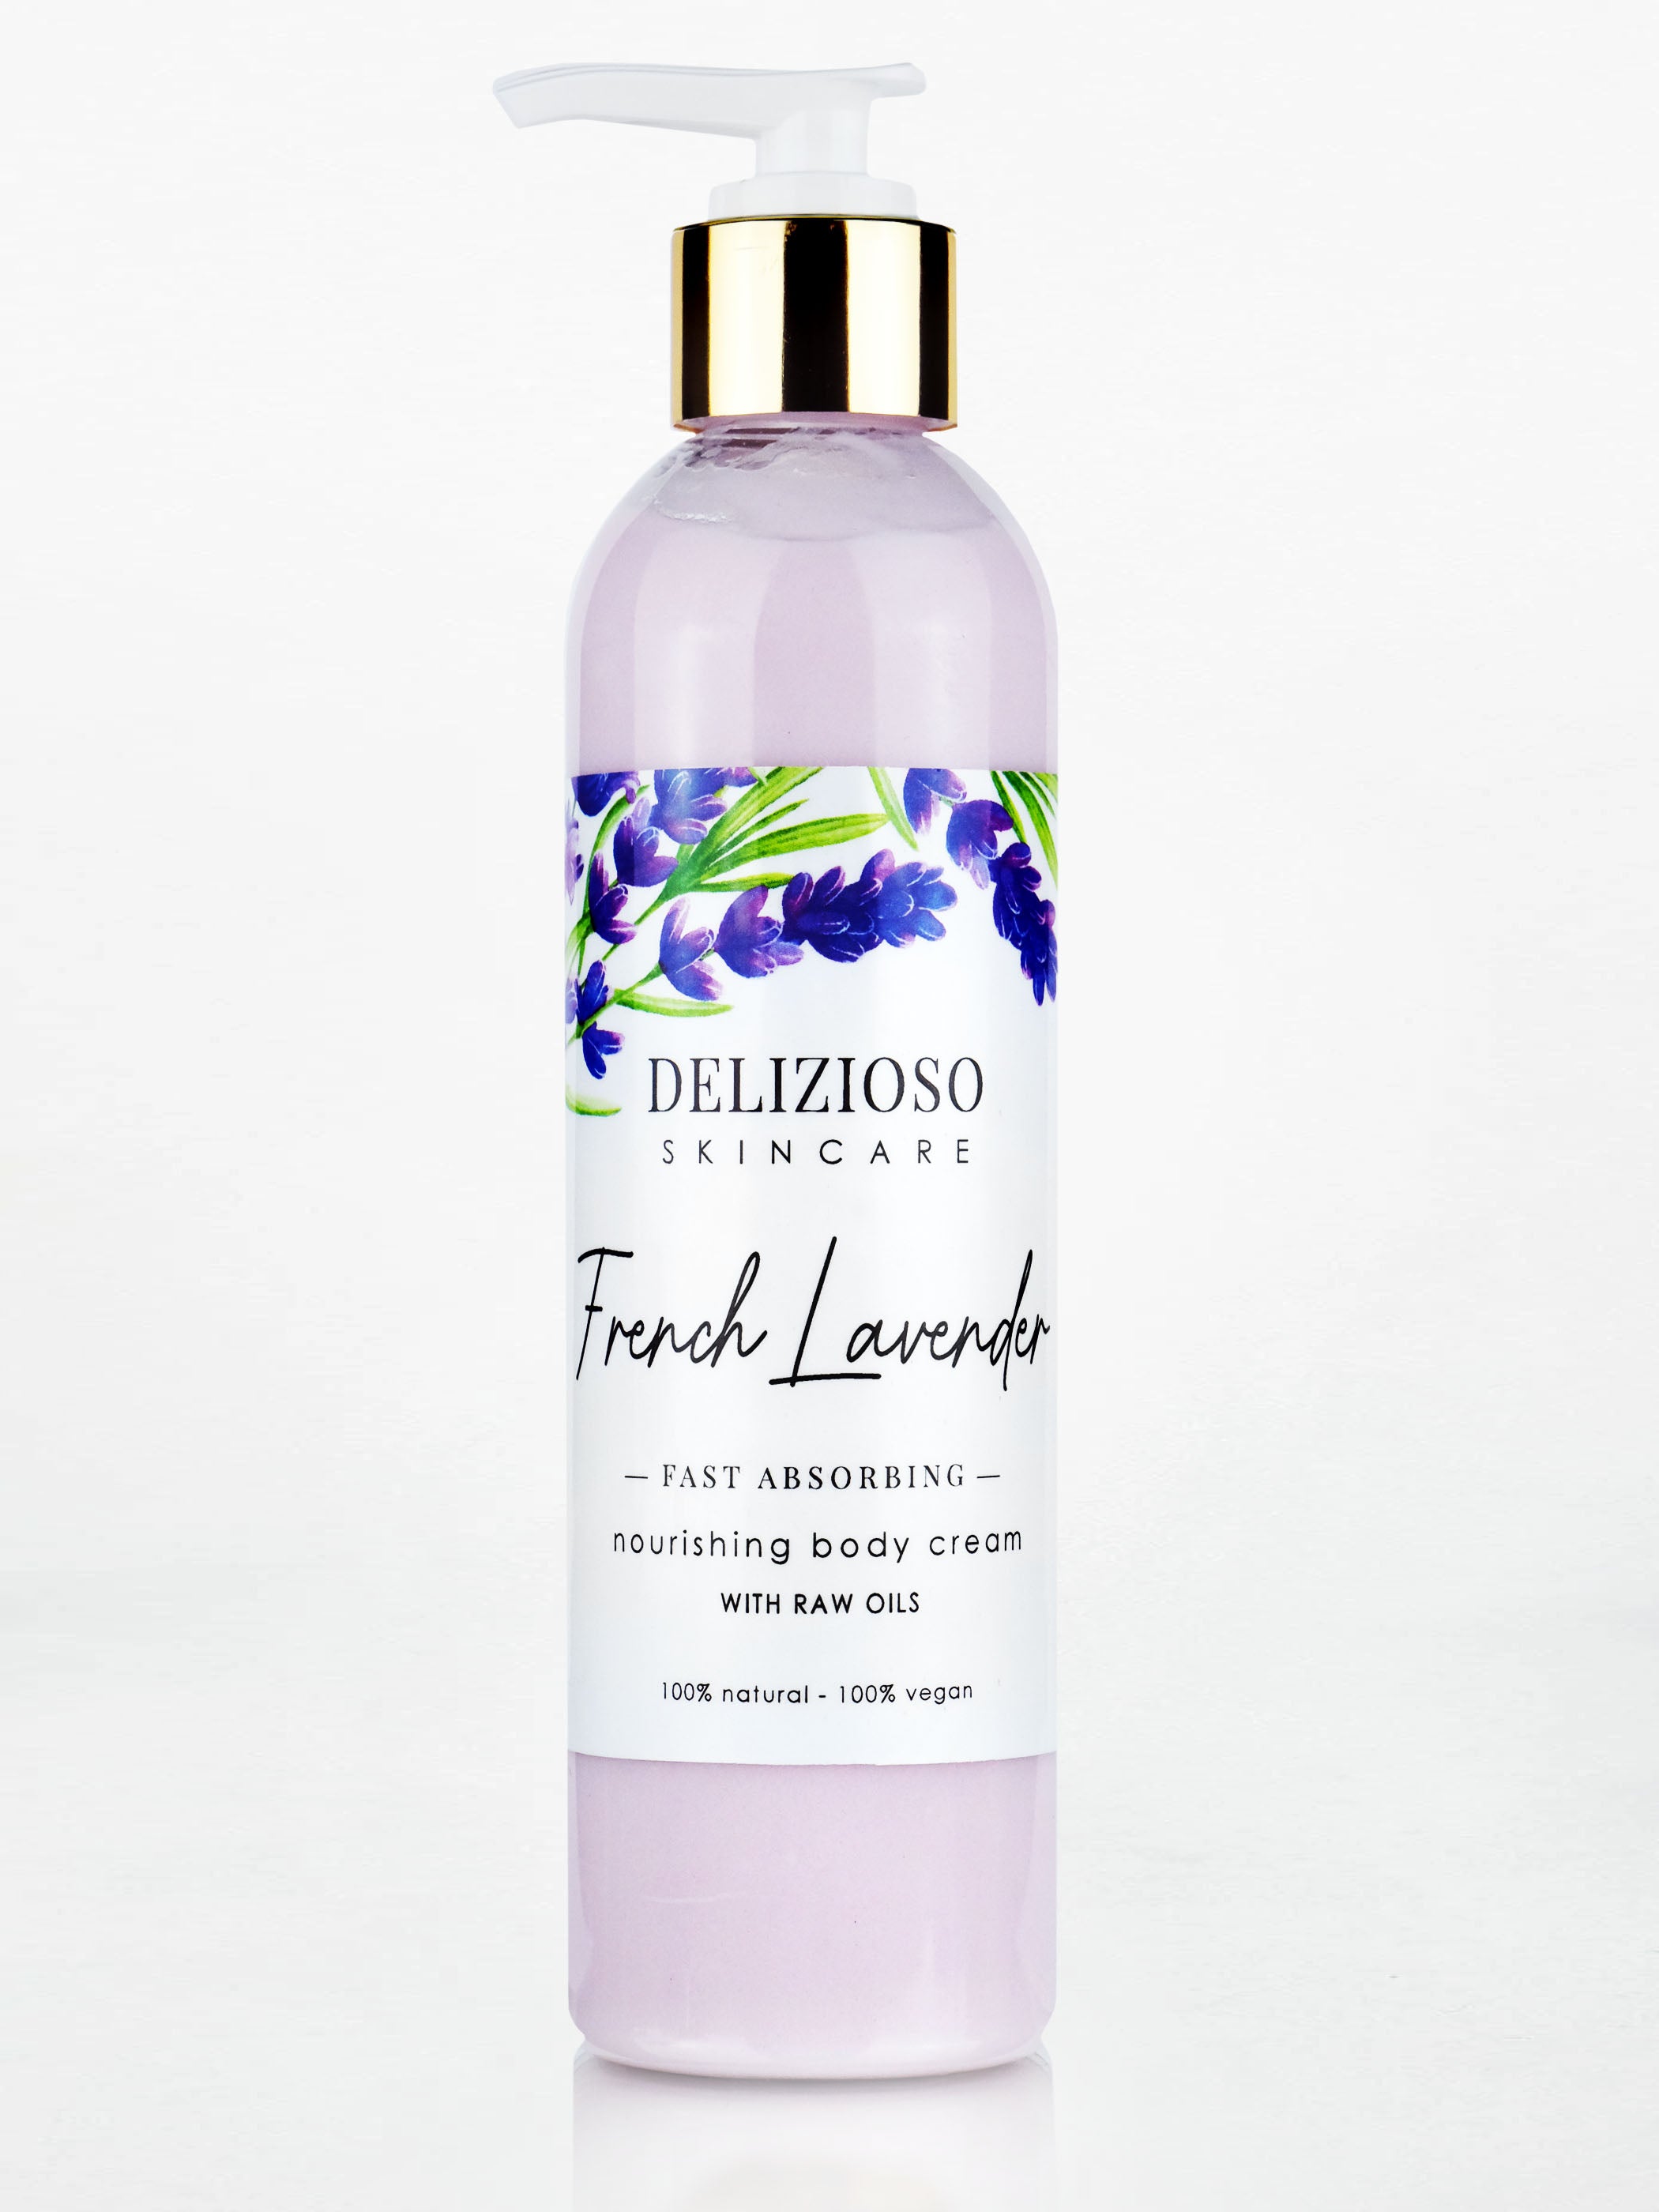 Lavender Body Juice Oil 8oz